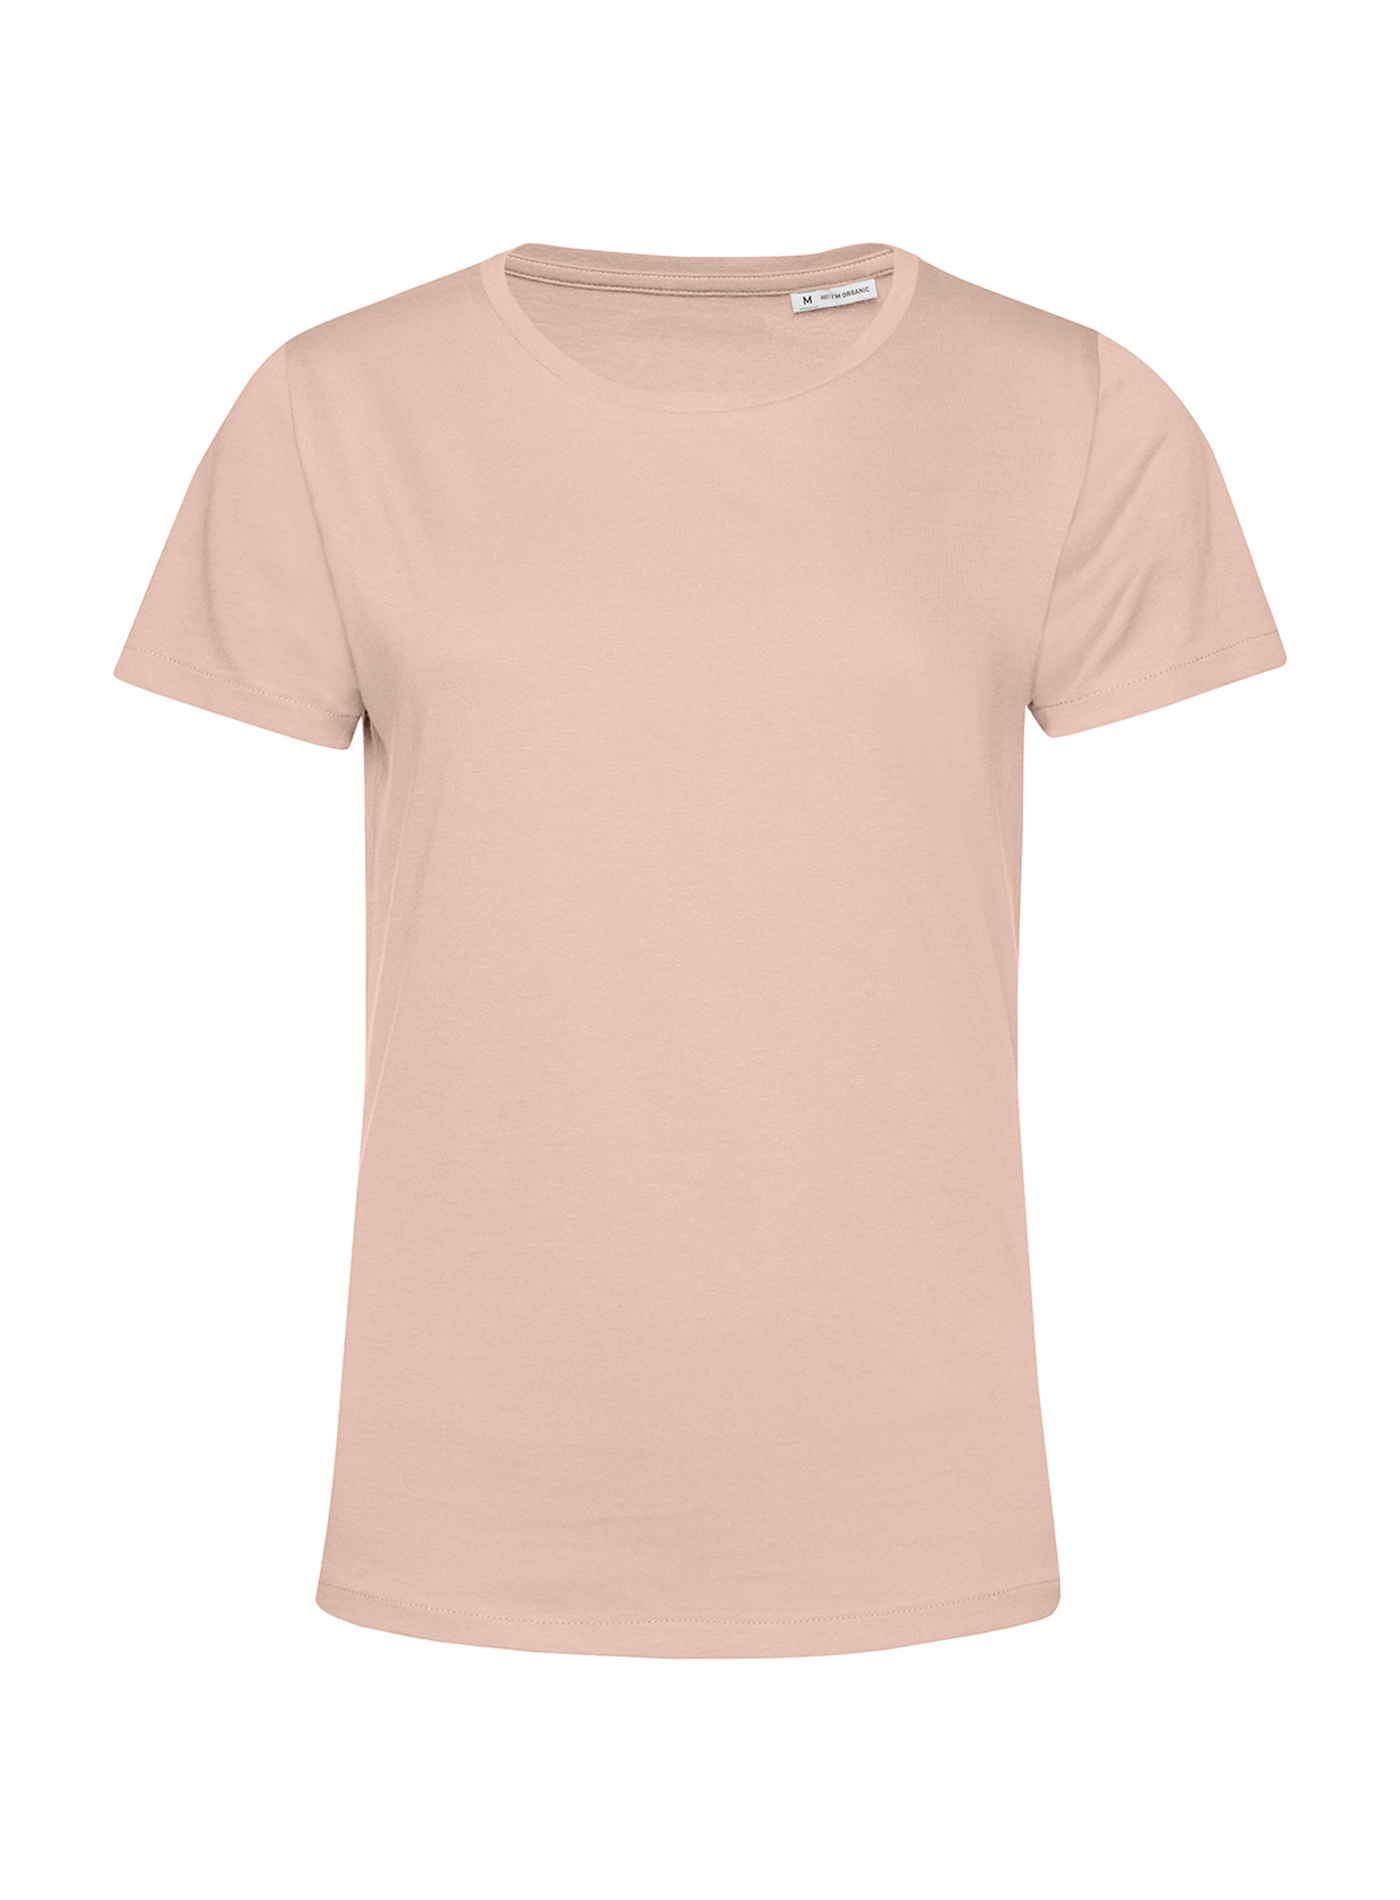 Dámské tričko B&C Collection Organic - Bledě růžová XXL